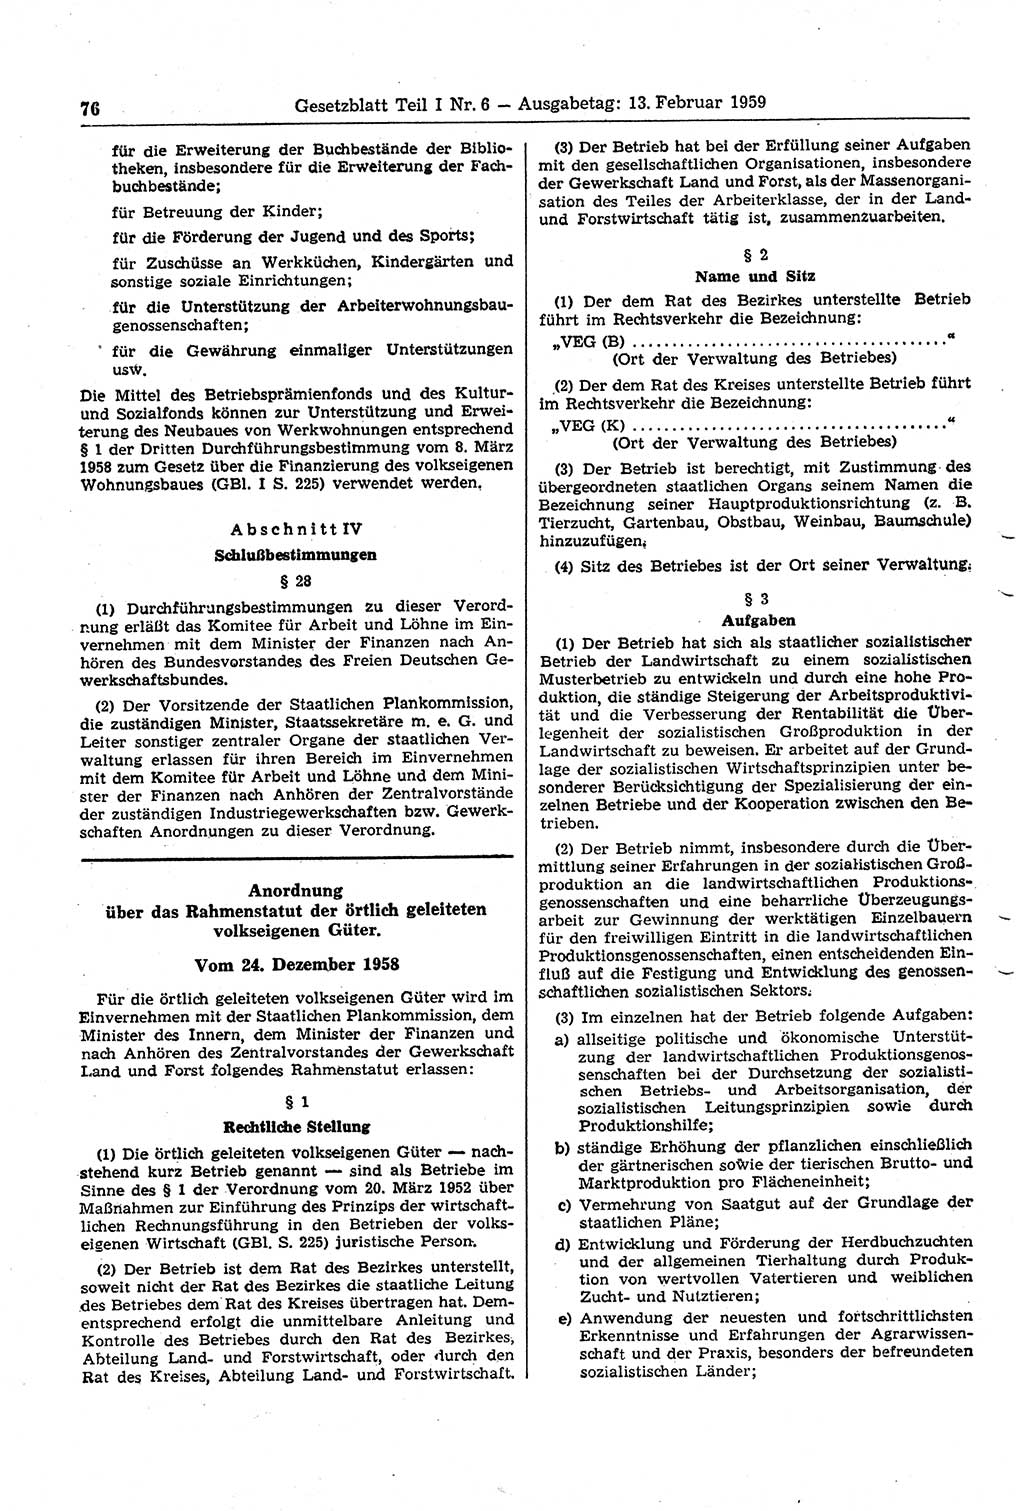 Gesetzblatt (GBl.) der Deutschen Demokratischen Republik (DDR) Teil Ⅰ 1959, Seite 76 (GBl. DDR Ⅰ 1959, S. 76)